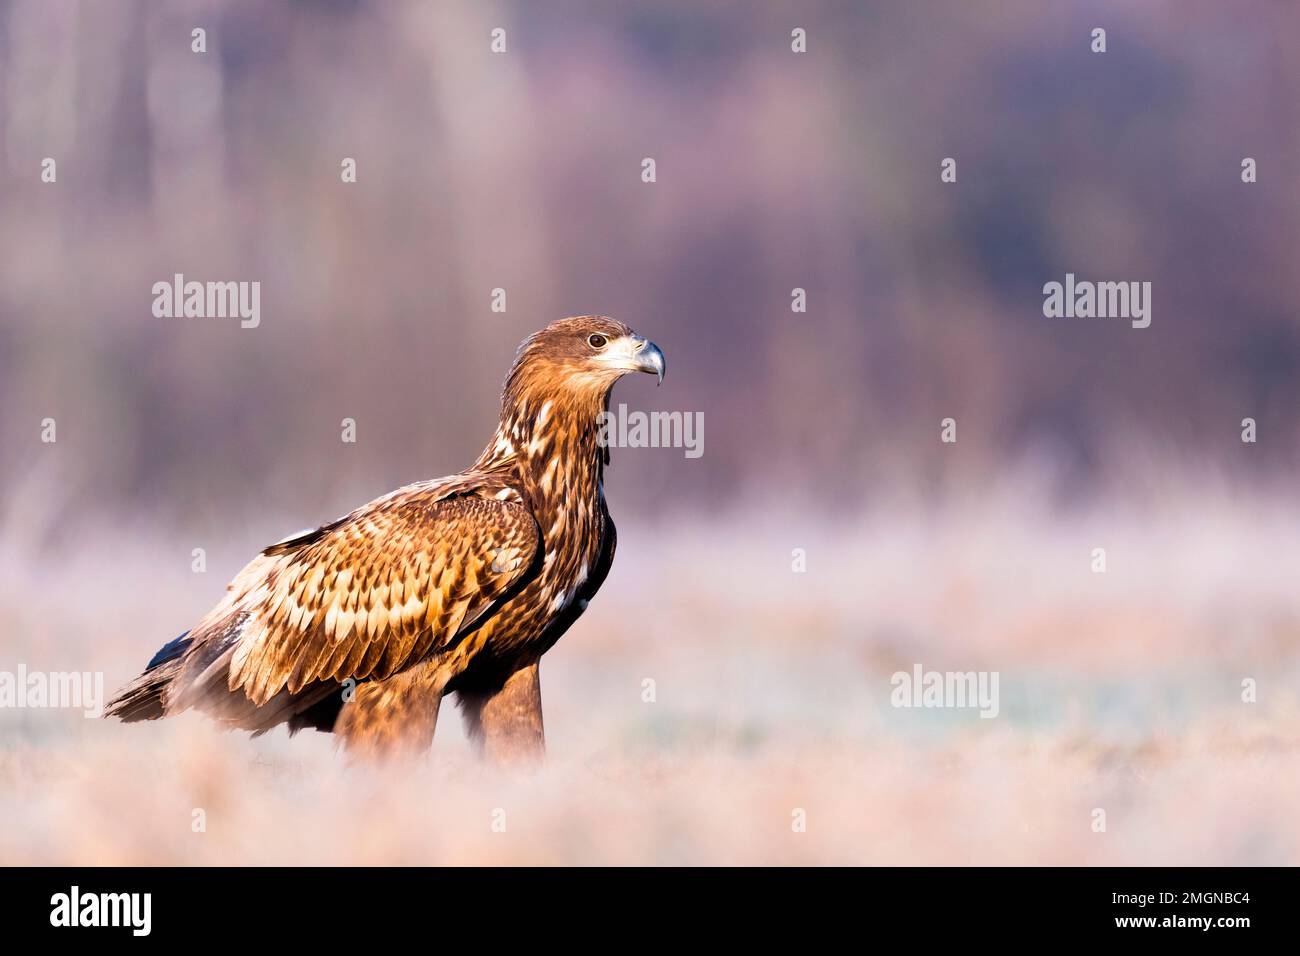 White-tailed eagle (Haliaeetus albicilla) on ground, Slovenia Stock Photo